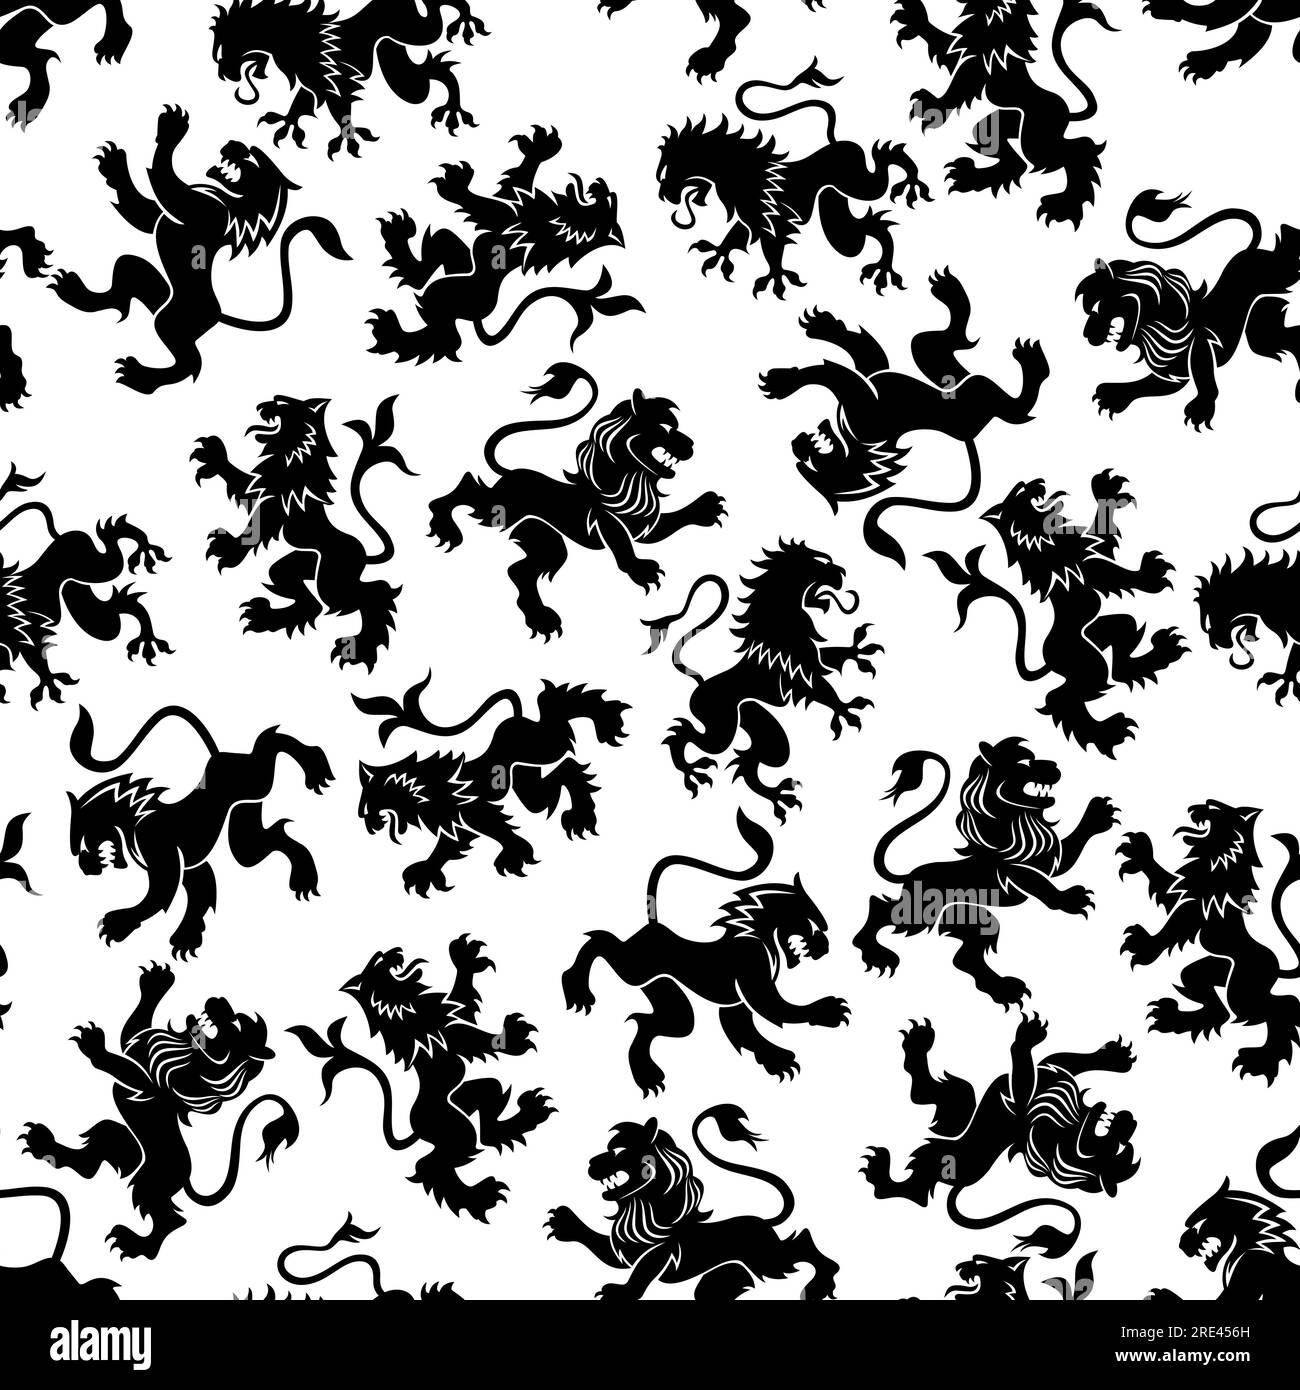 Lions héraldiques sans couture motif rampant avec des silhouettes de profil noir de lions royaux médiévaux avec des pattes avant surélevées sur fond blanc. Utiliser comme écusson, blasons ou motif héraldique Illustration de Vecteur